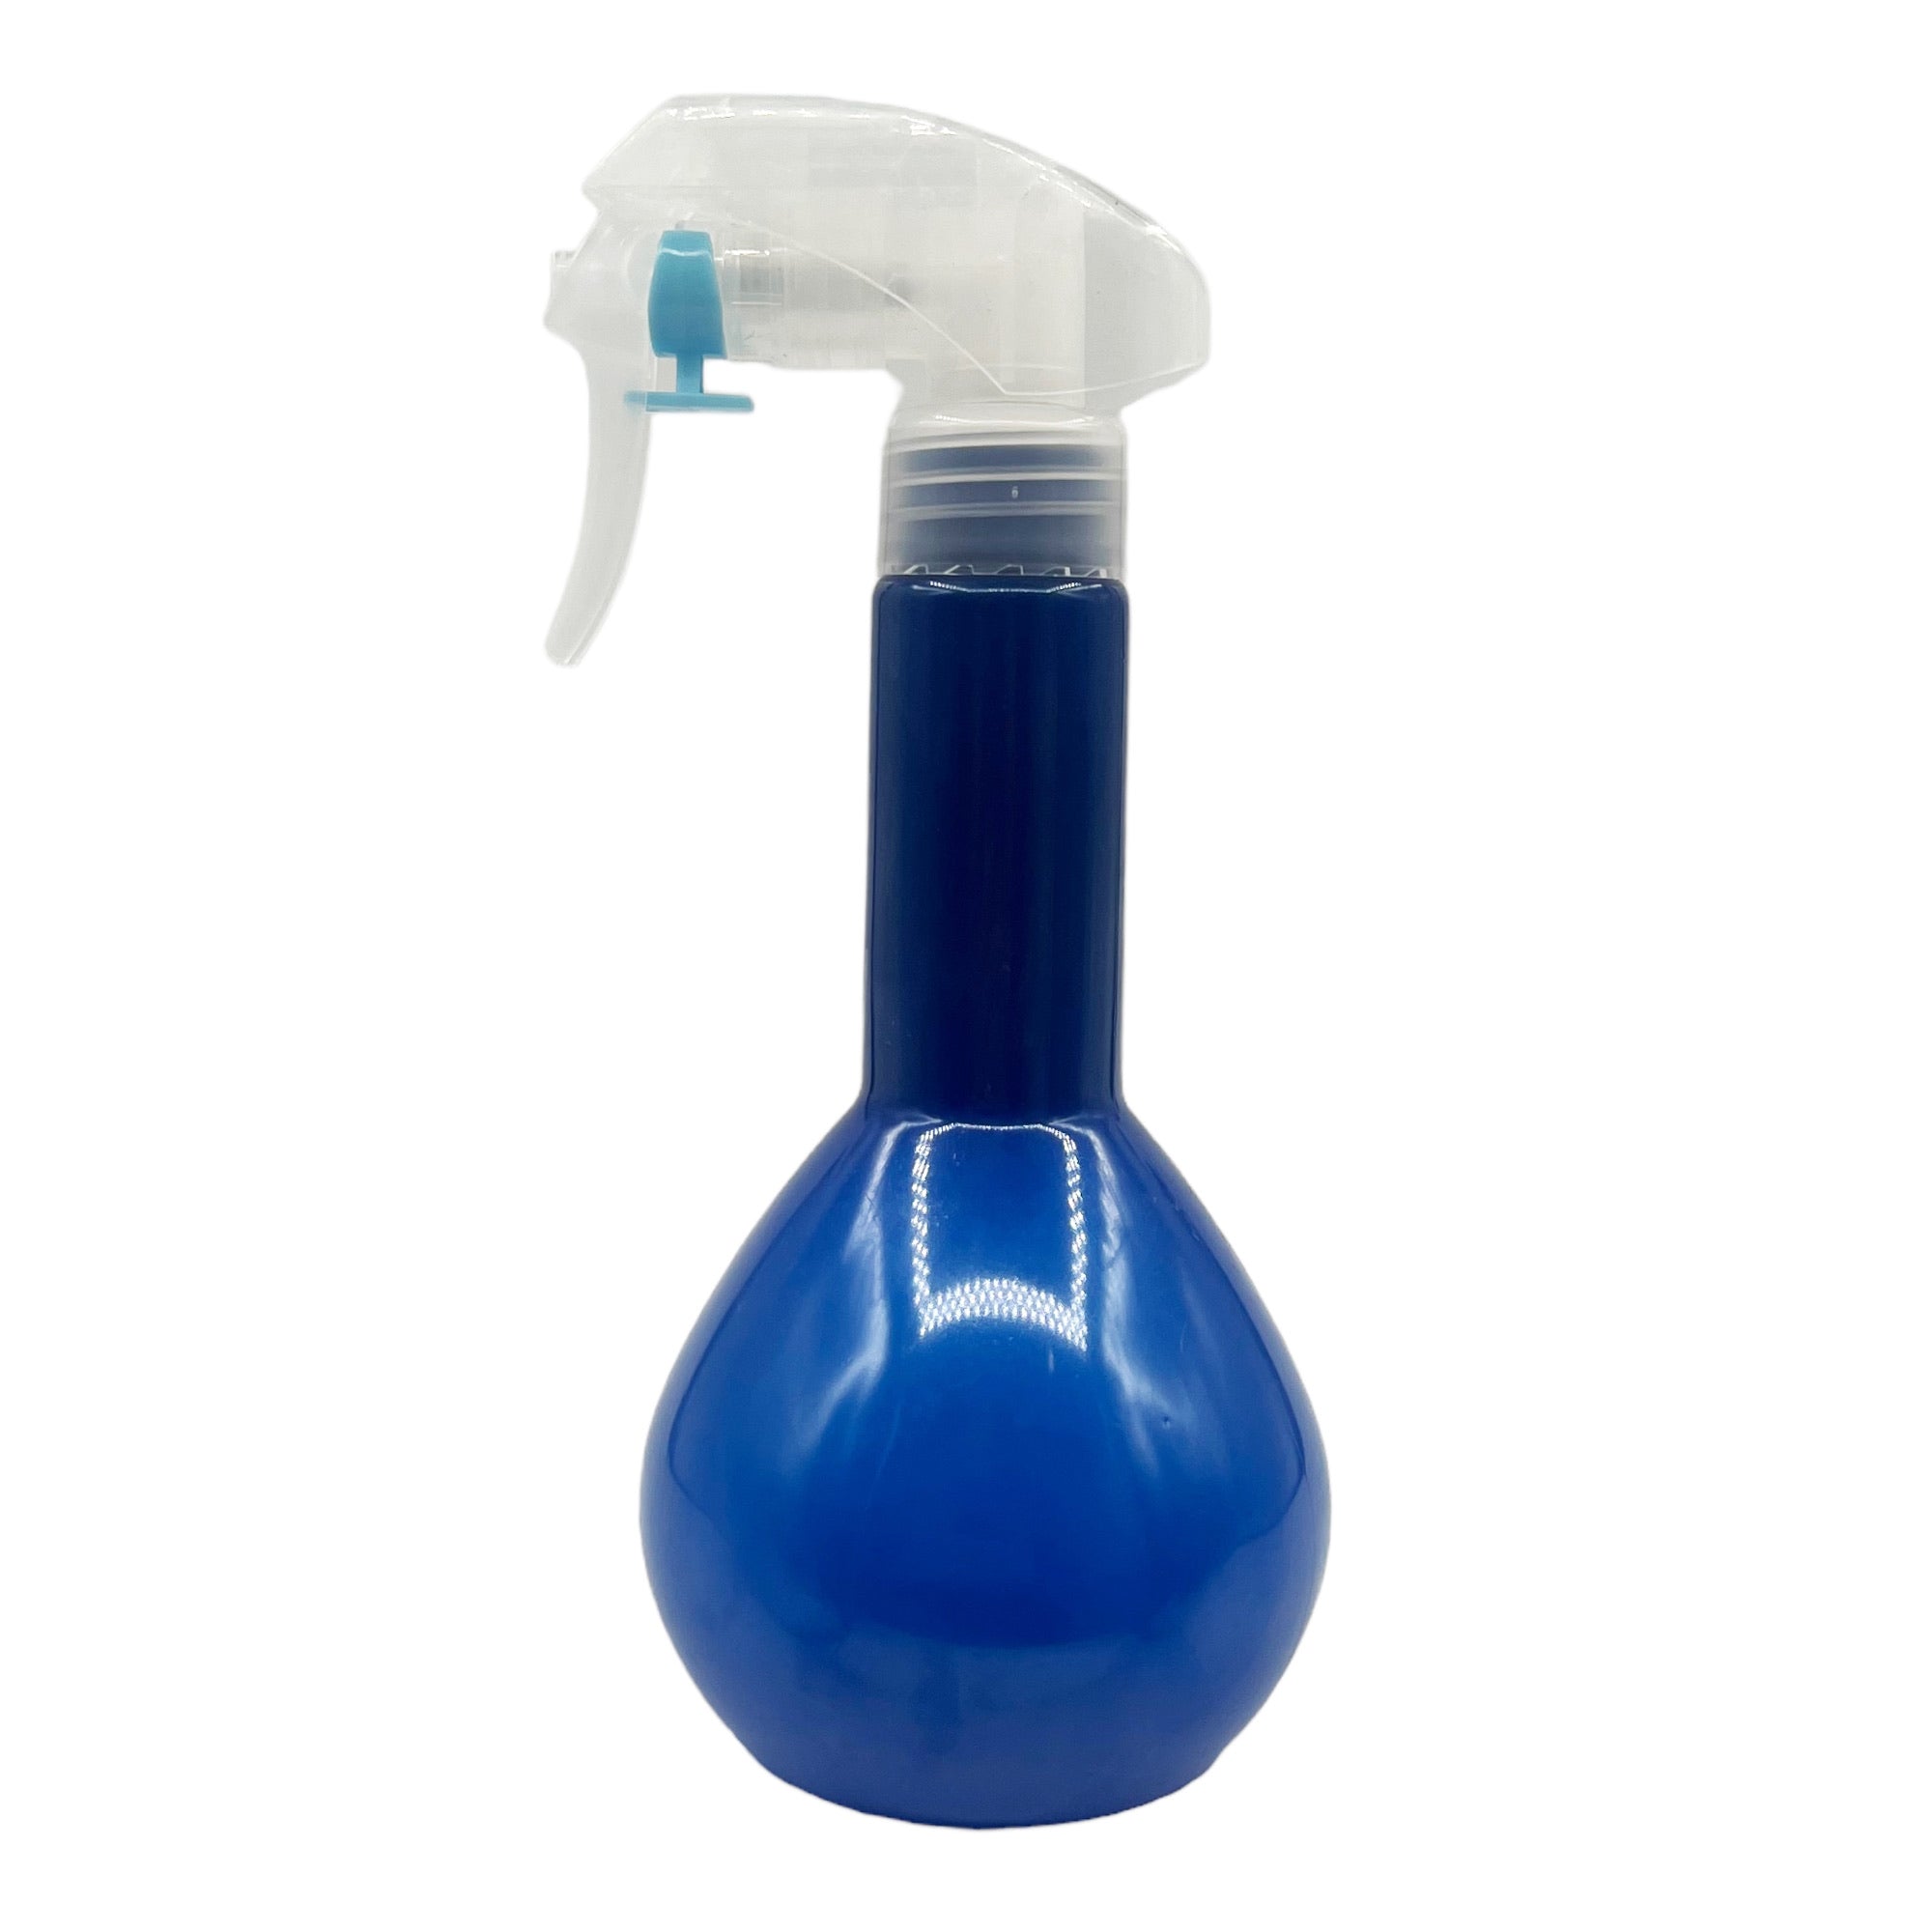 Eson - Water Spray Bottle 300ml Round Empty Refillable Ultra Fine Mist Sprayer (Dark Blue)